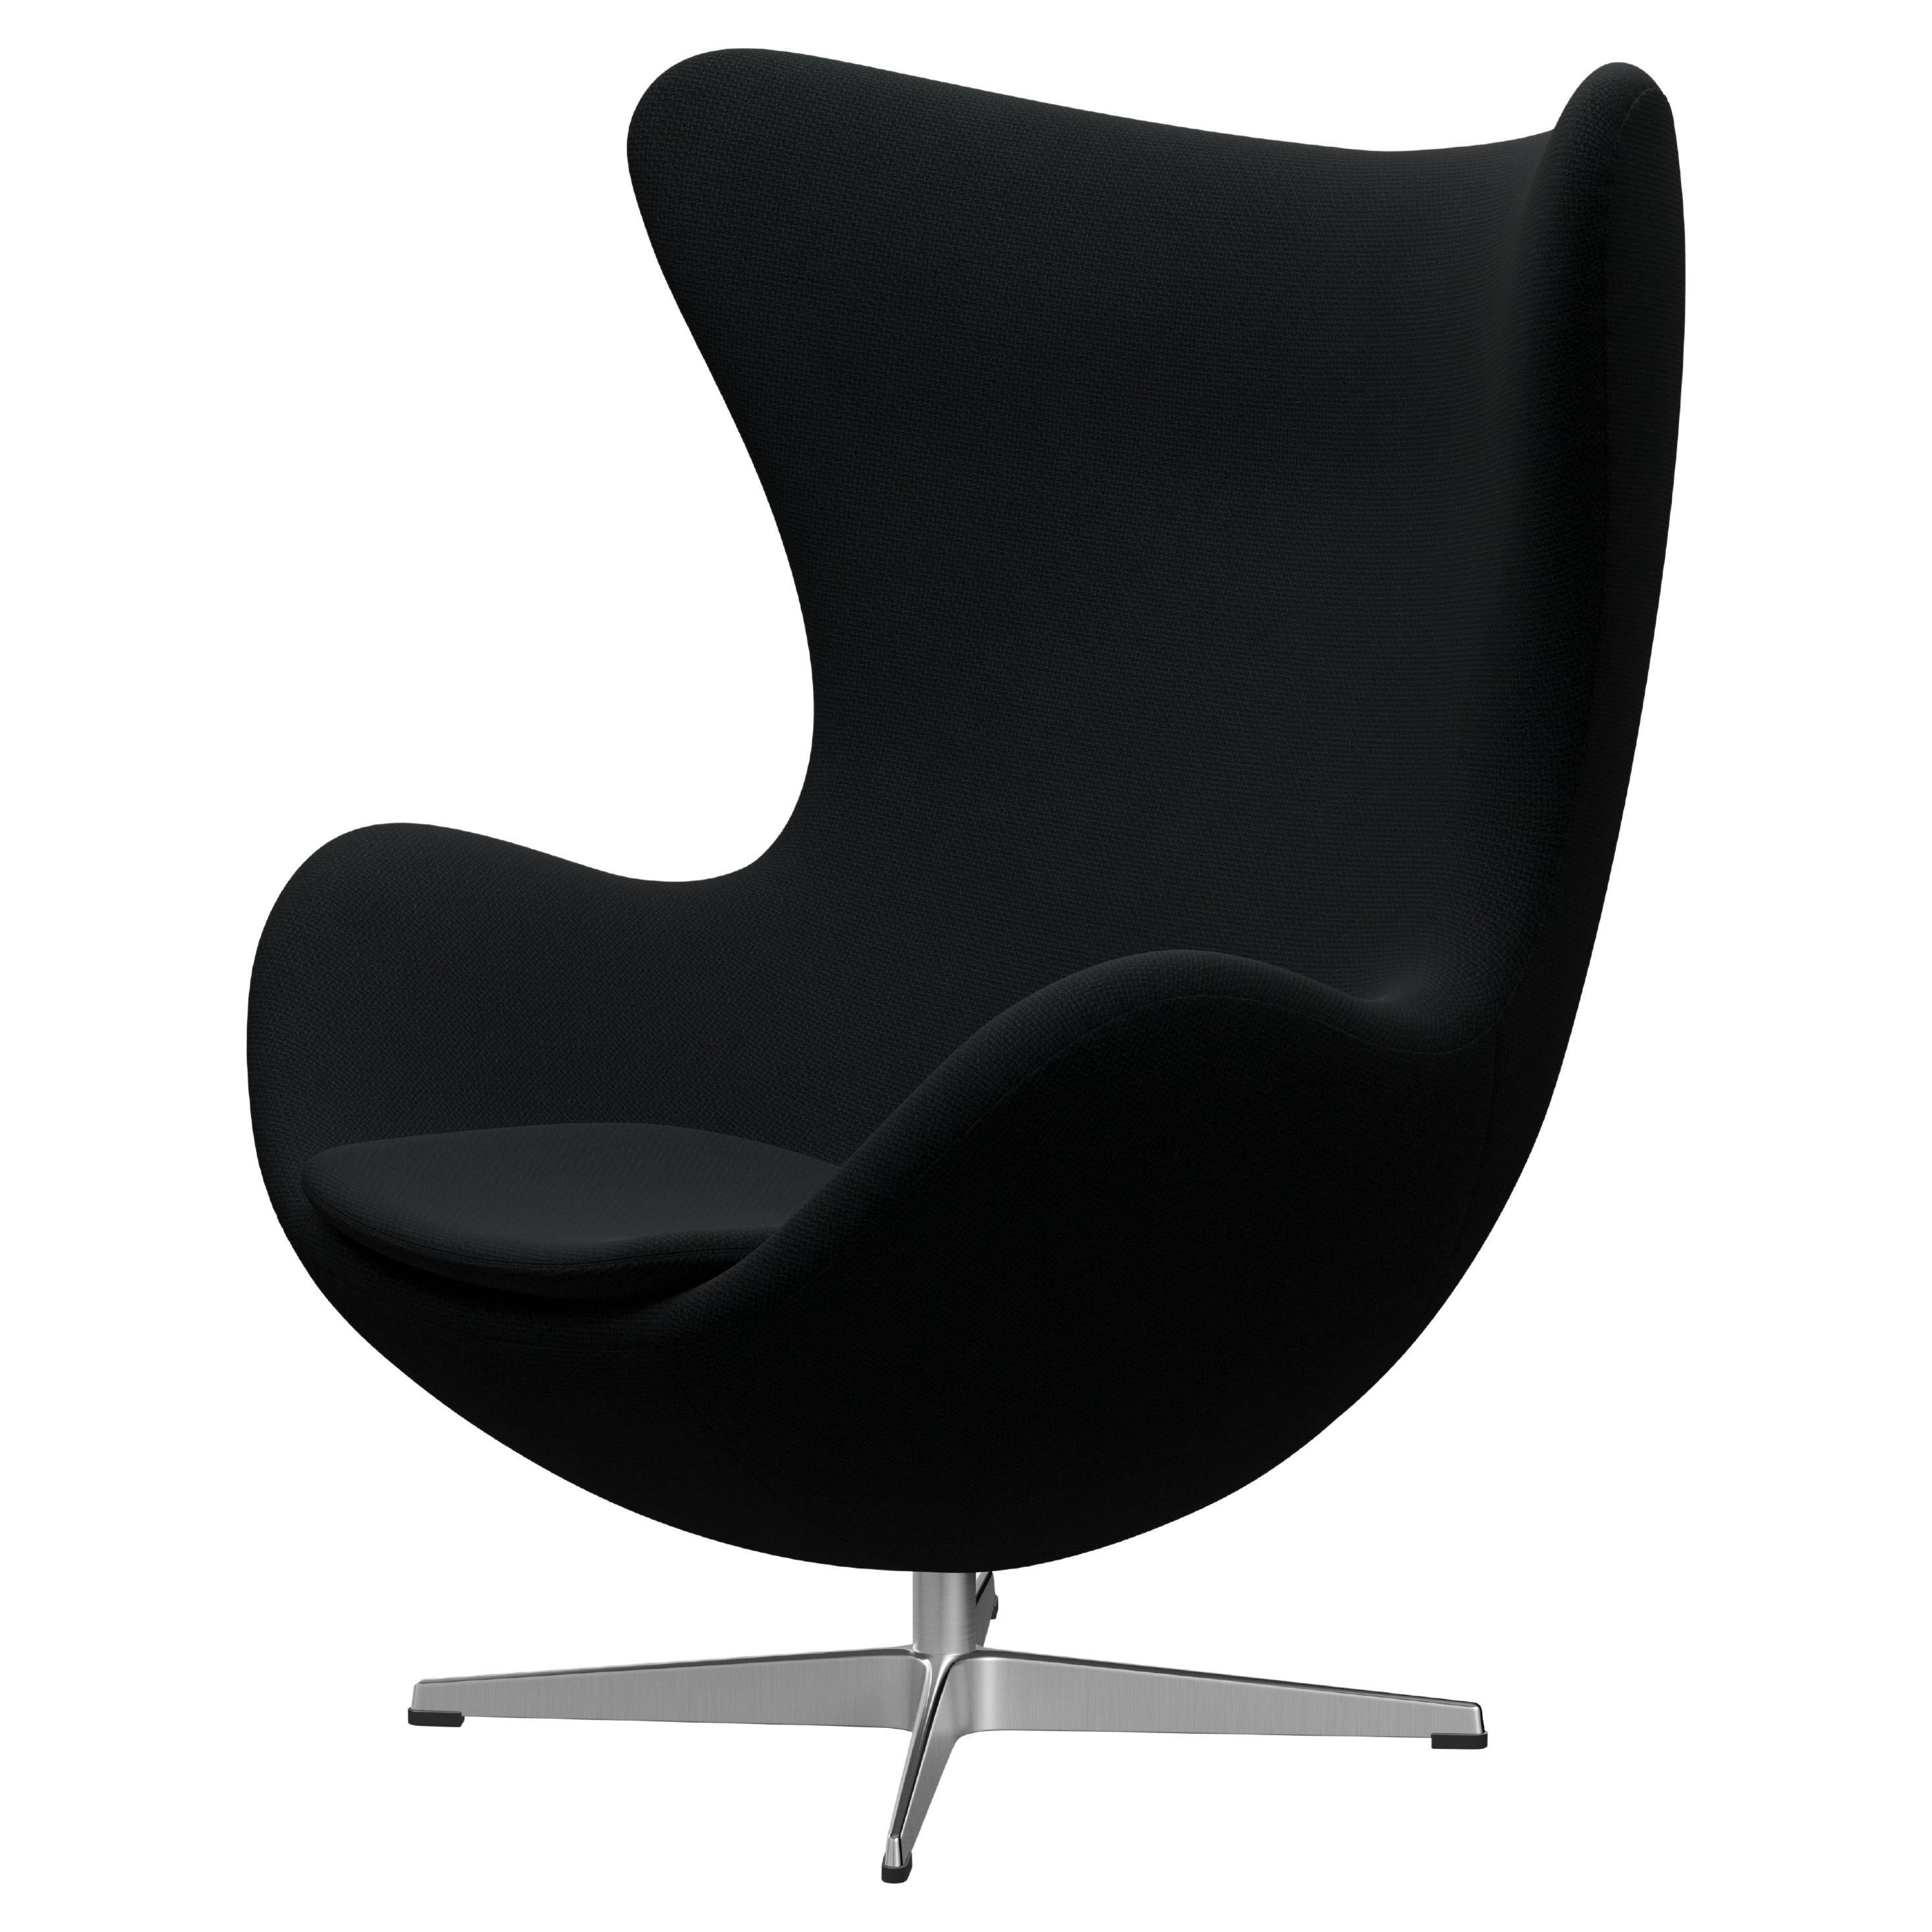 Arne Jacobsen 'Egg' Chair for Fritz Hansen in Fabric Upholstery (Cat. 1) For Sale